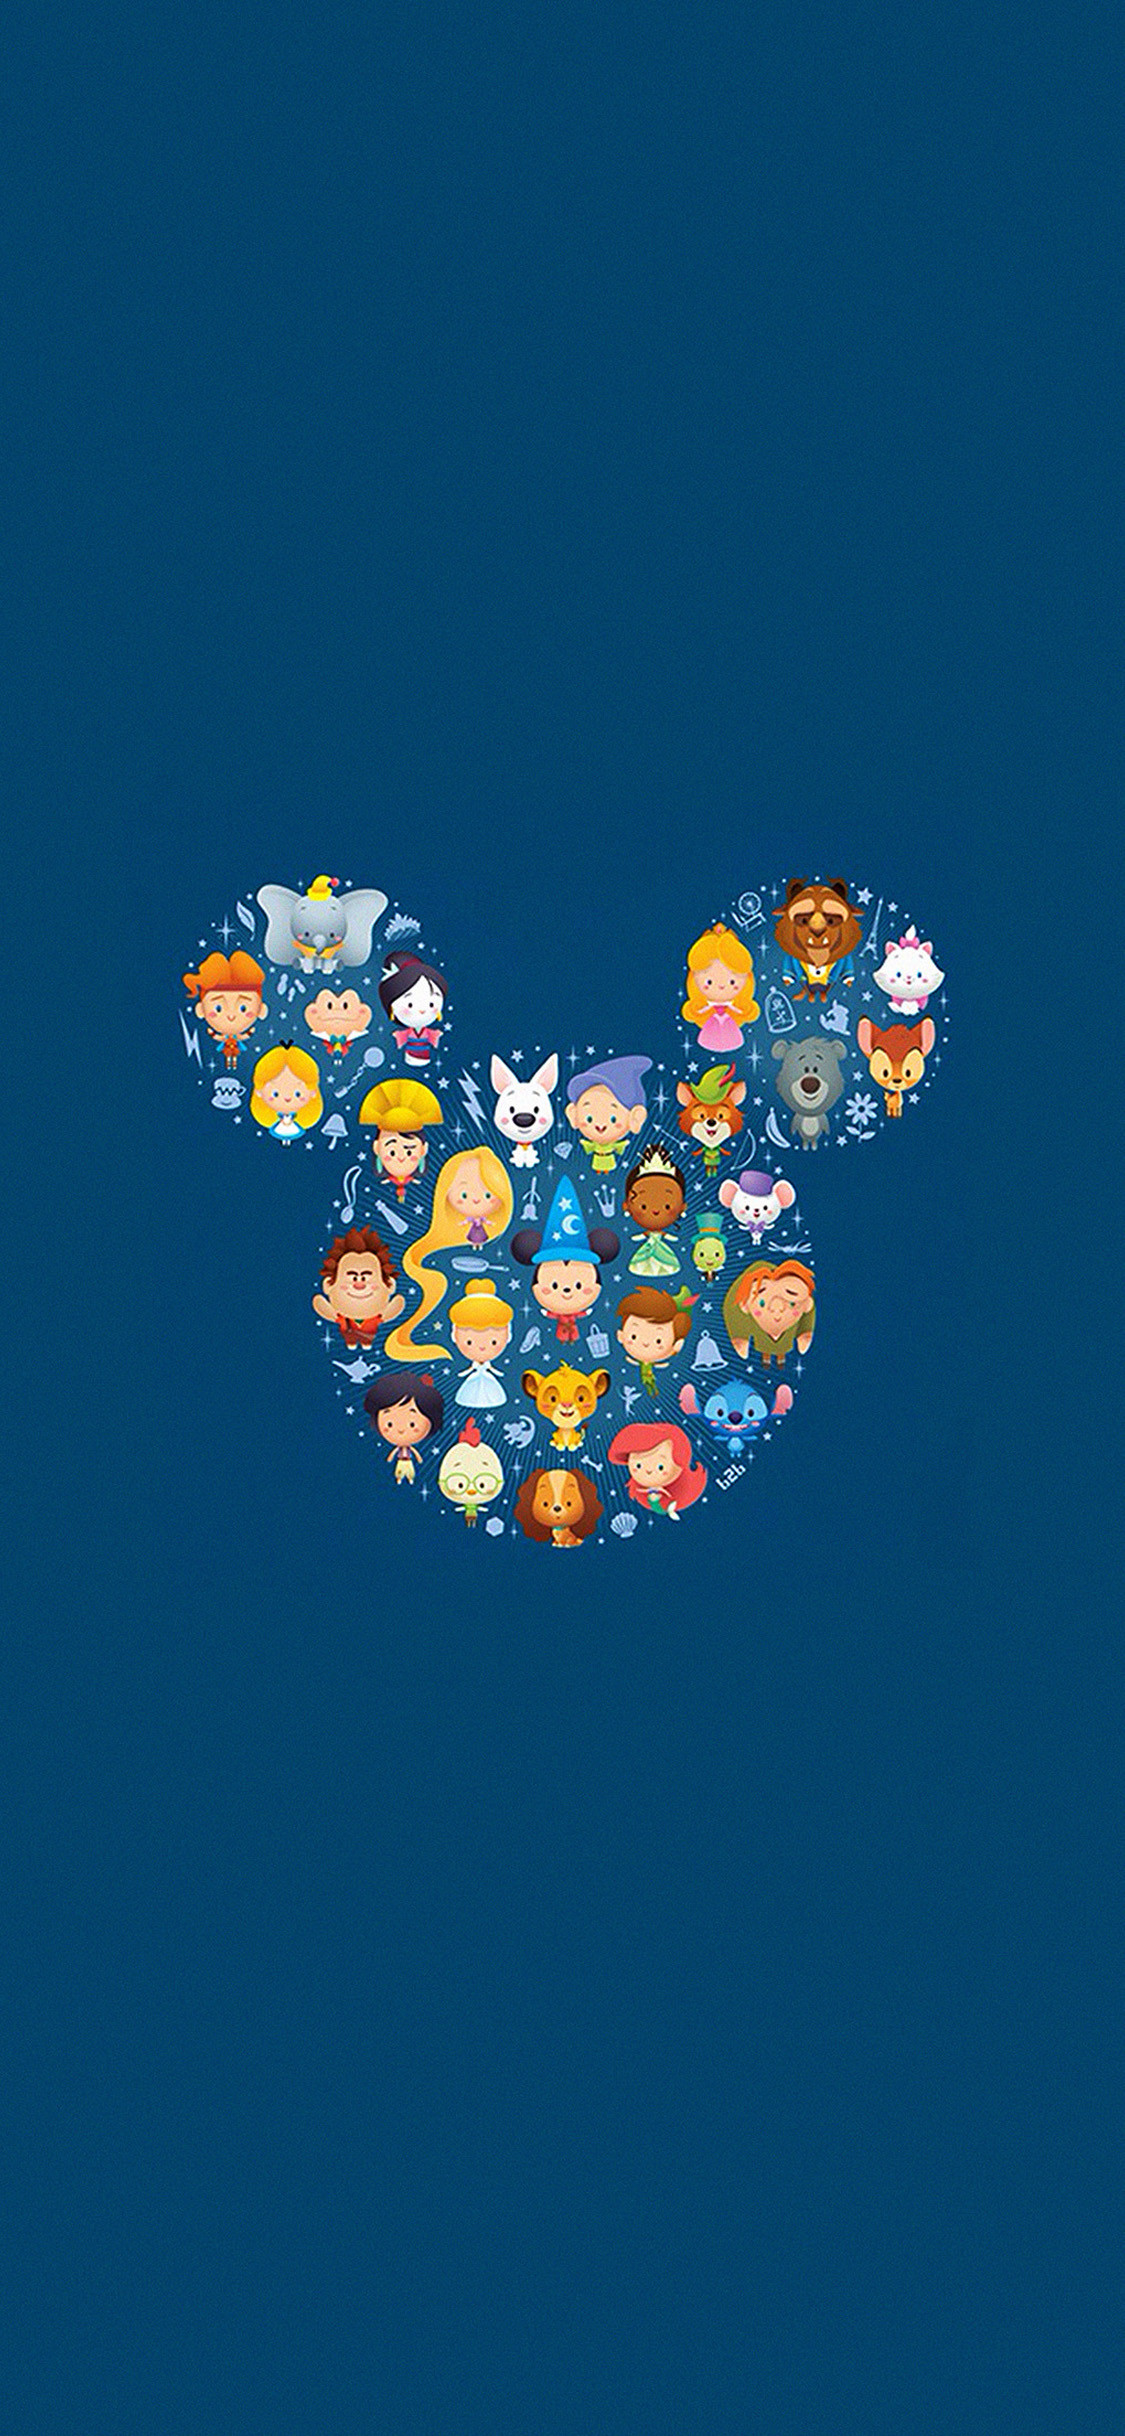 1125x2436, Cute Disney Characters Iphone 8 Wallpaper - Cute Wallpapers For Iphone - HD Wallpaper 